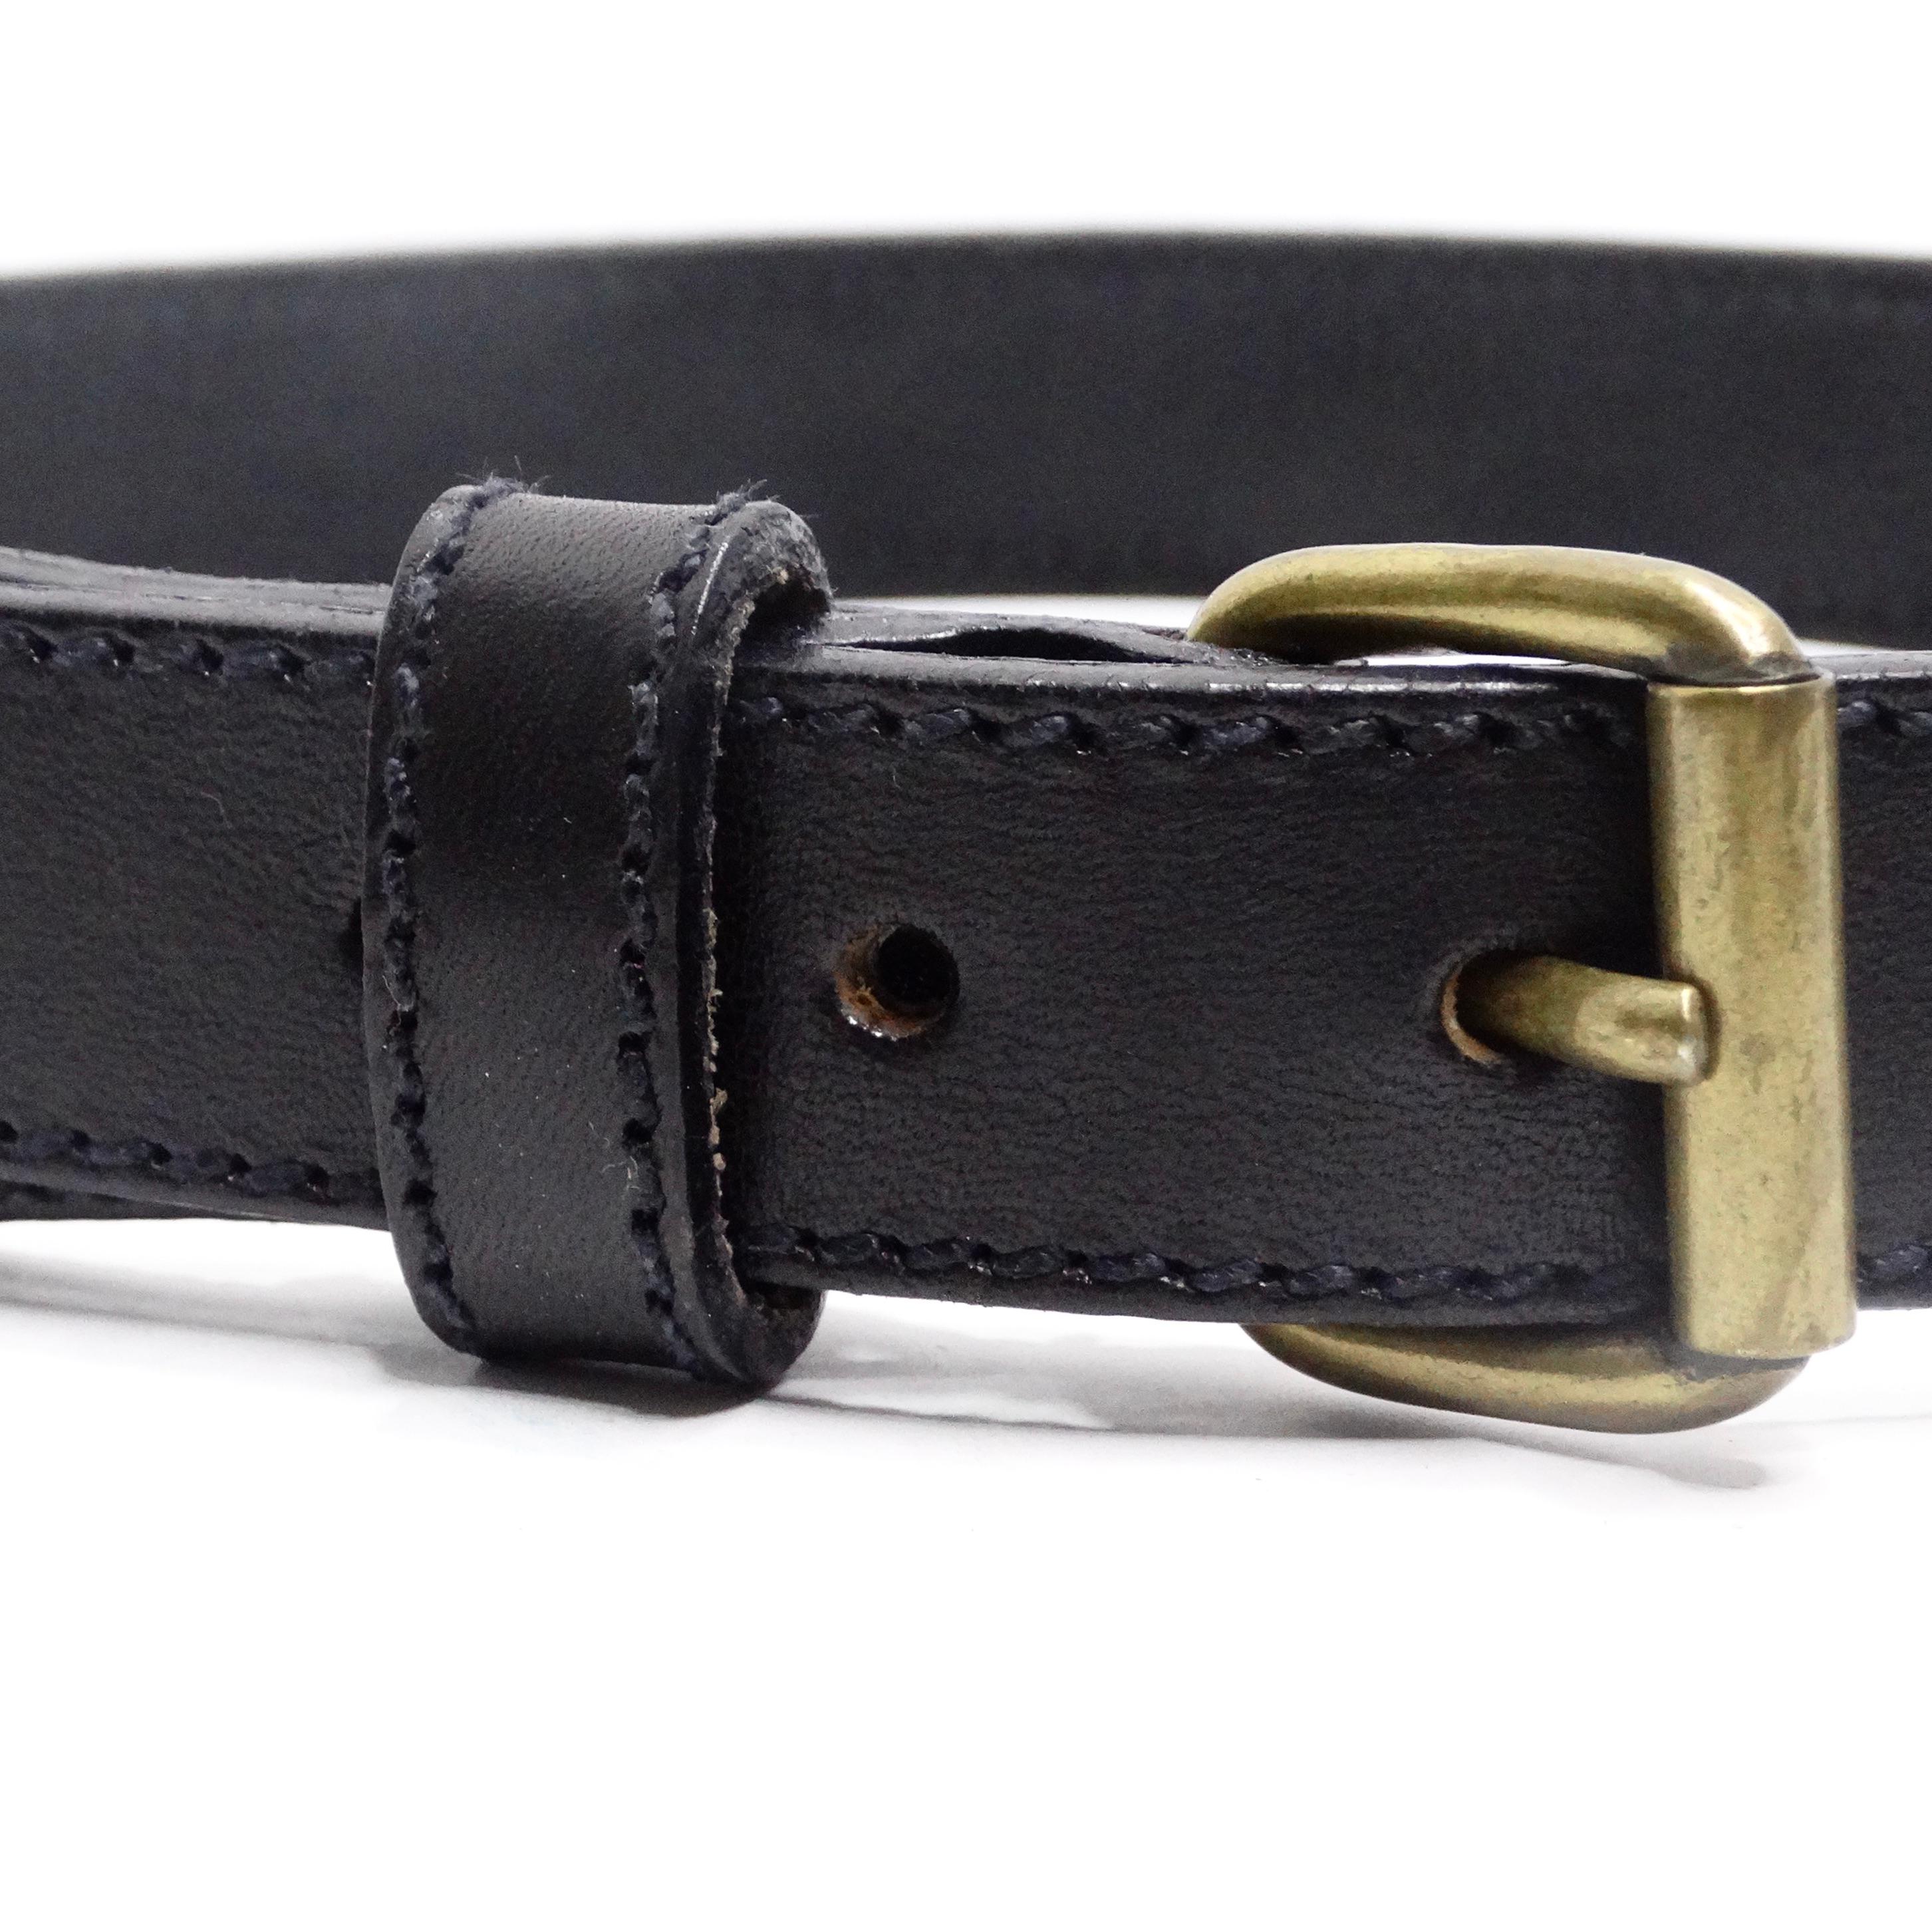 Rehaussez votre garde-robe avec la ceinture en cuir noir ornée de pièces de monnaie Moschino 1990 - un accessoire intemporel et polyvalent qui fusionne sans effort le charme vintage et le style contemporain. Cette ceinture en cuir noir est ornée de